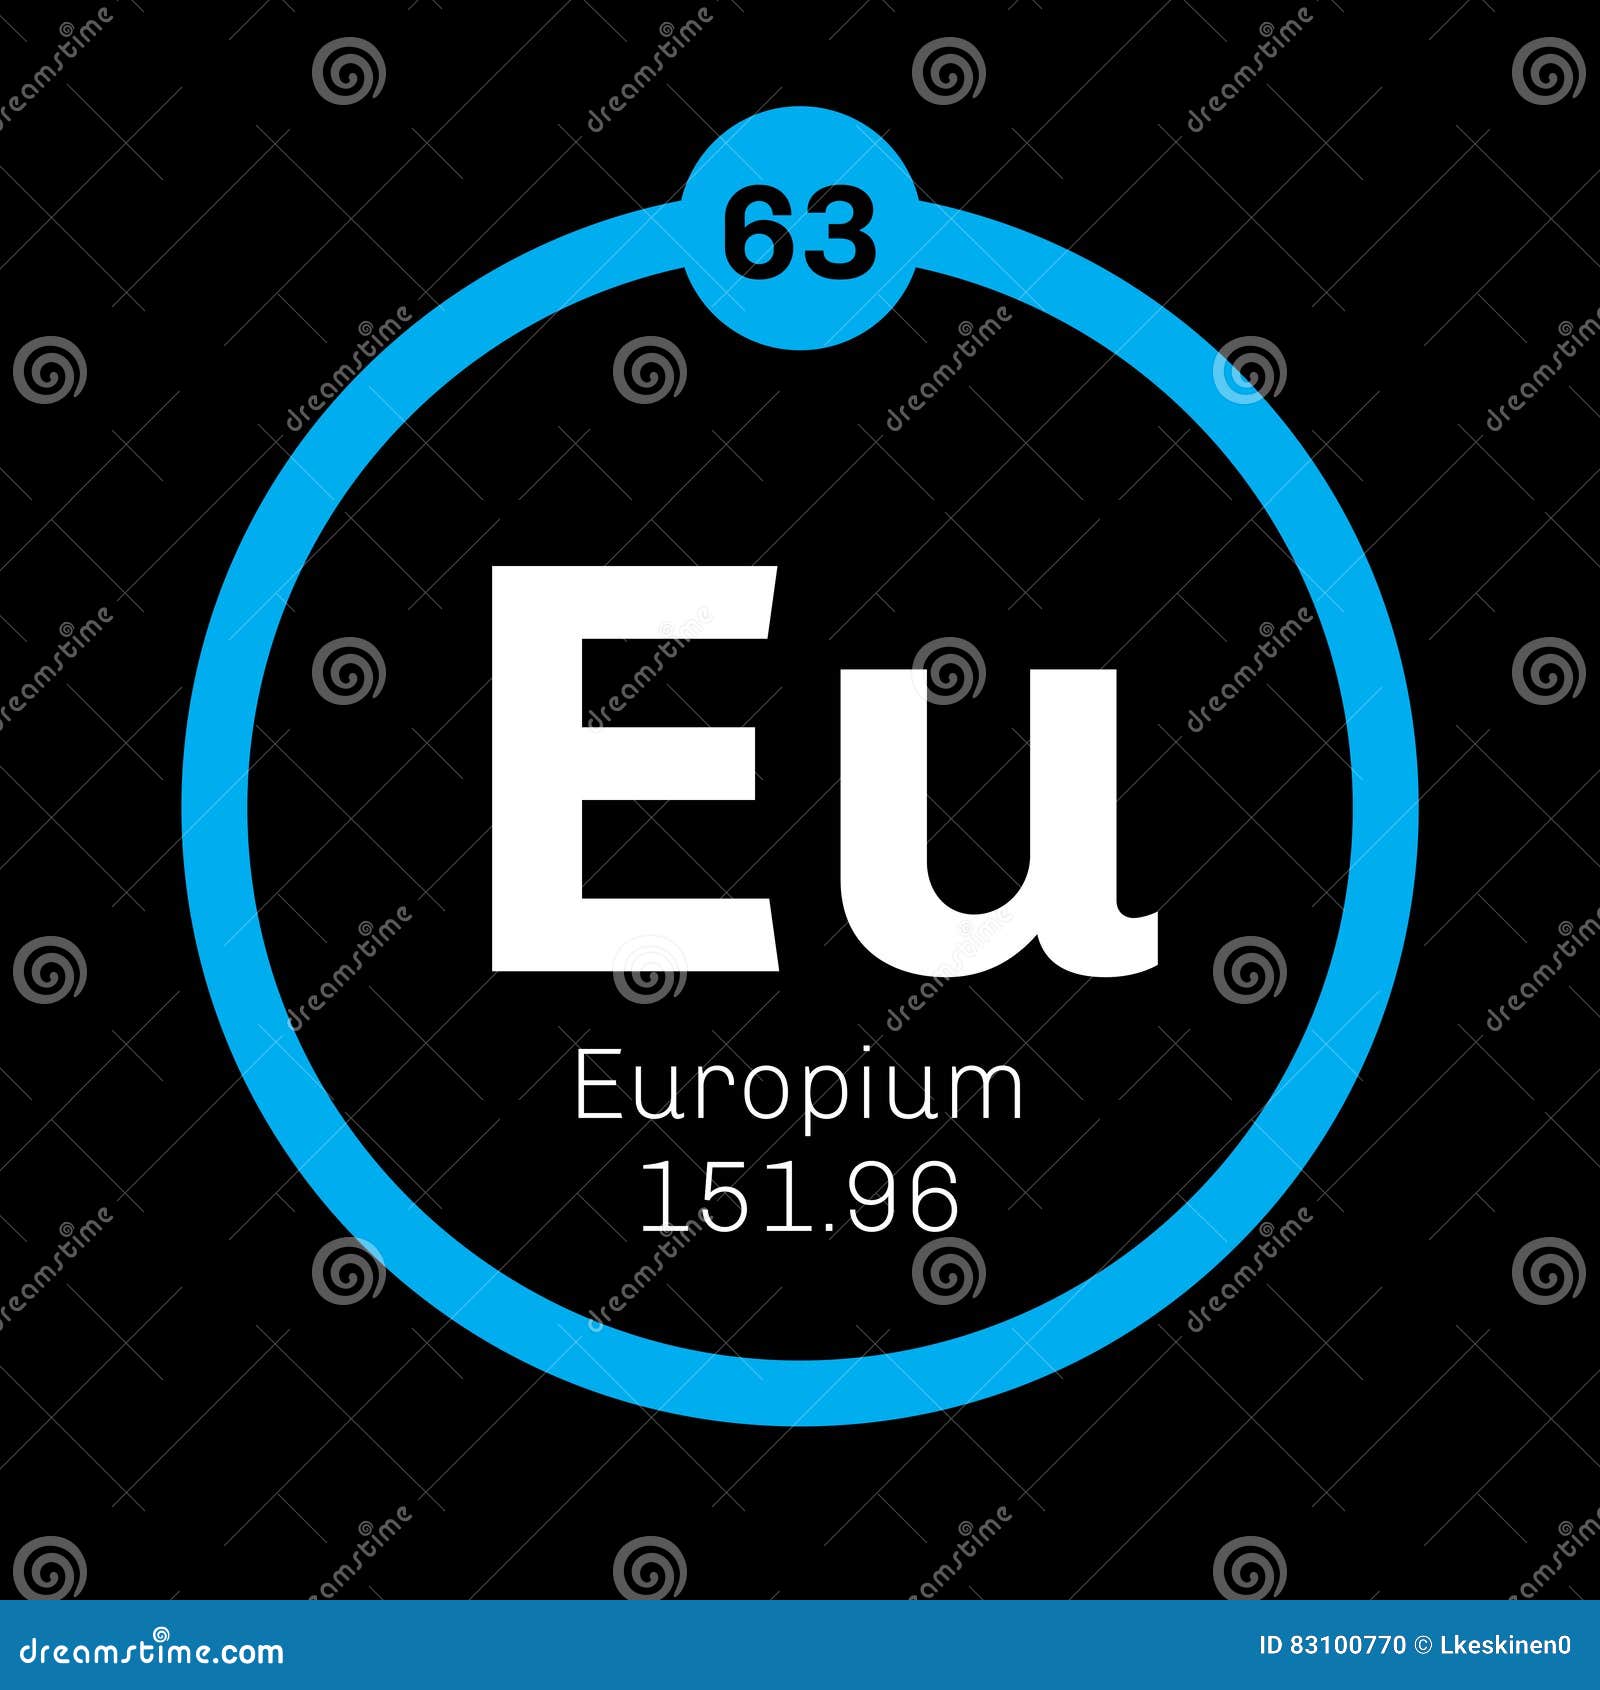 Европий химический элемент. Европий элемент. Хим элемент европий. Элемент в химии европий. Европий-151.